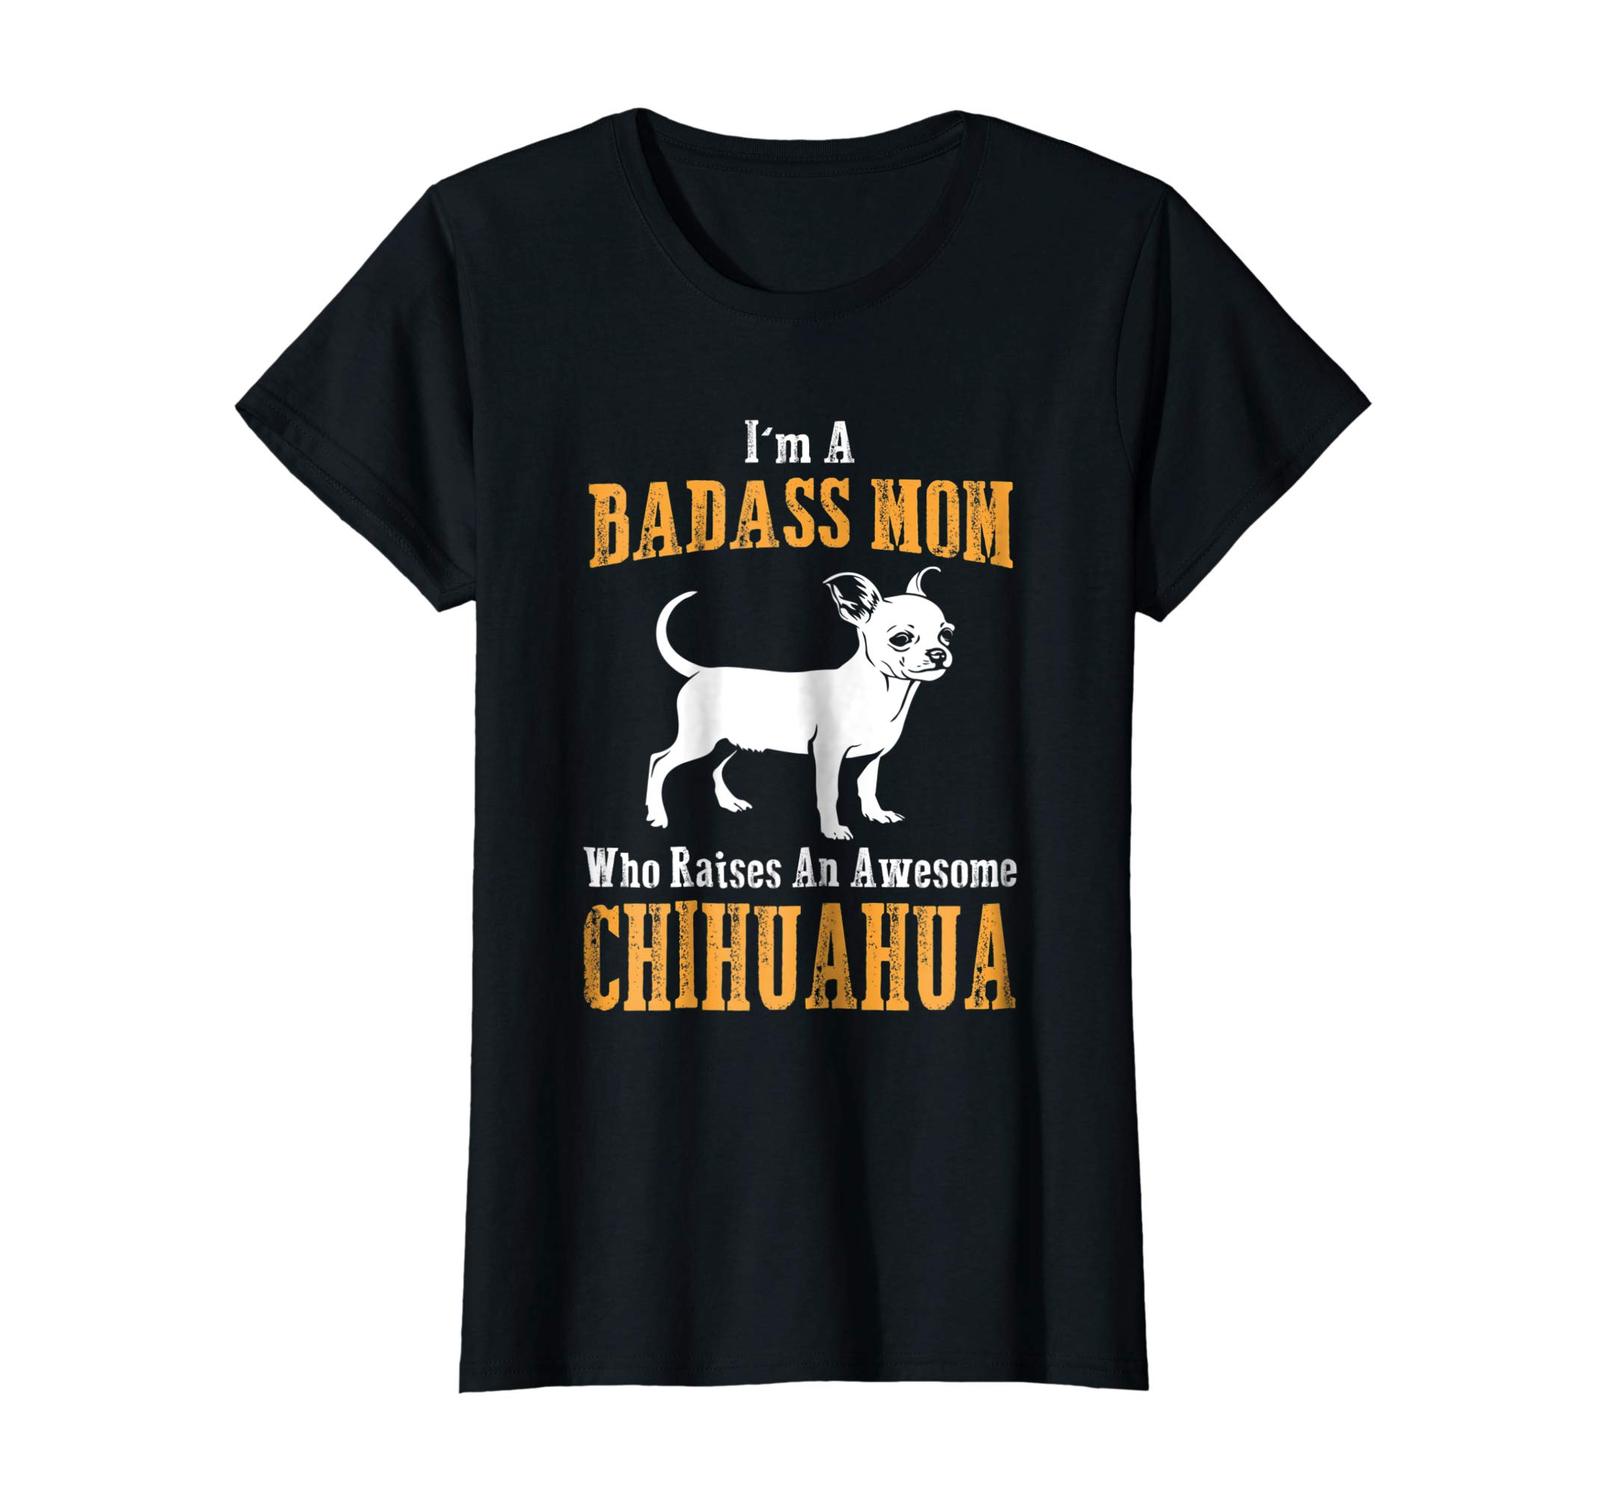 Dog Fashion - I'm A Badass Mom Who Raises An Awesome Chihuahua-Best Shirt Wowen